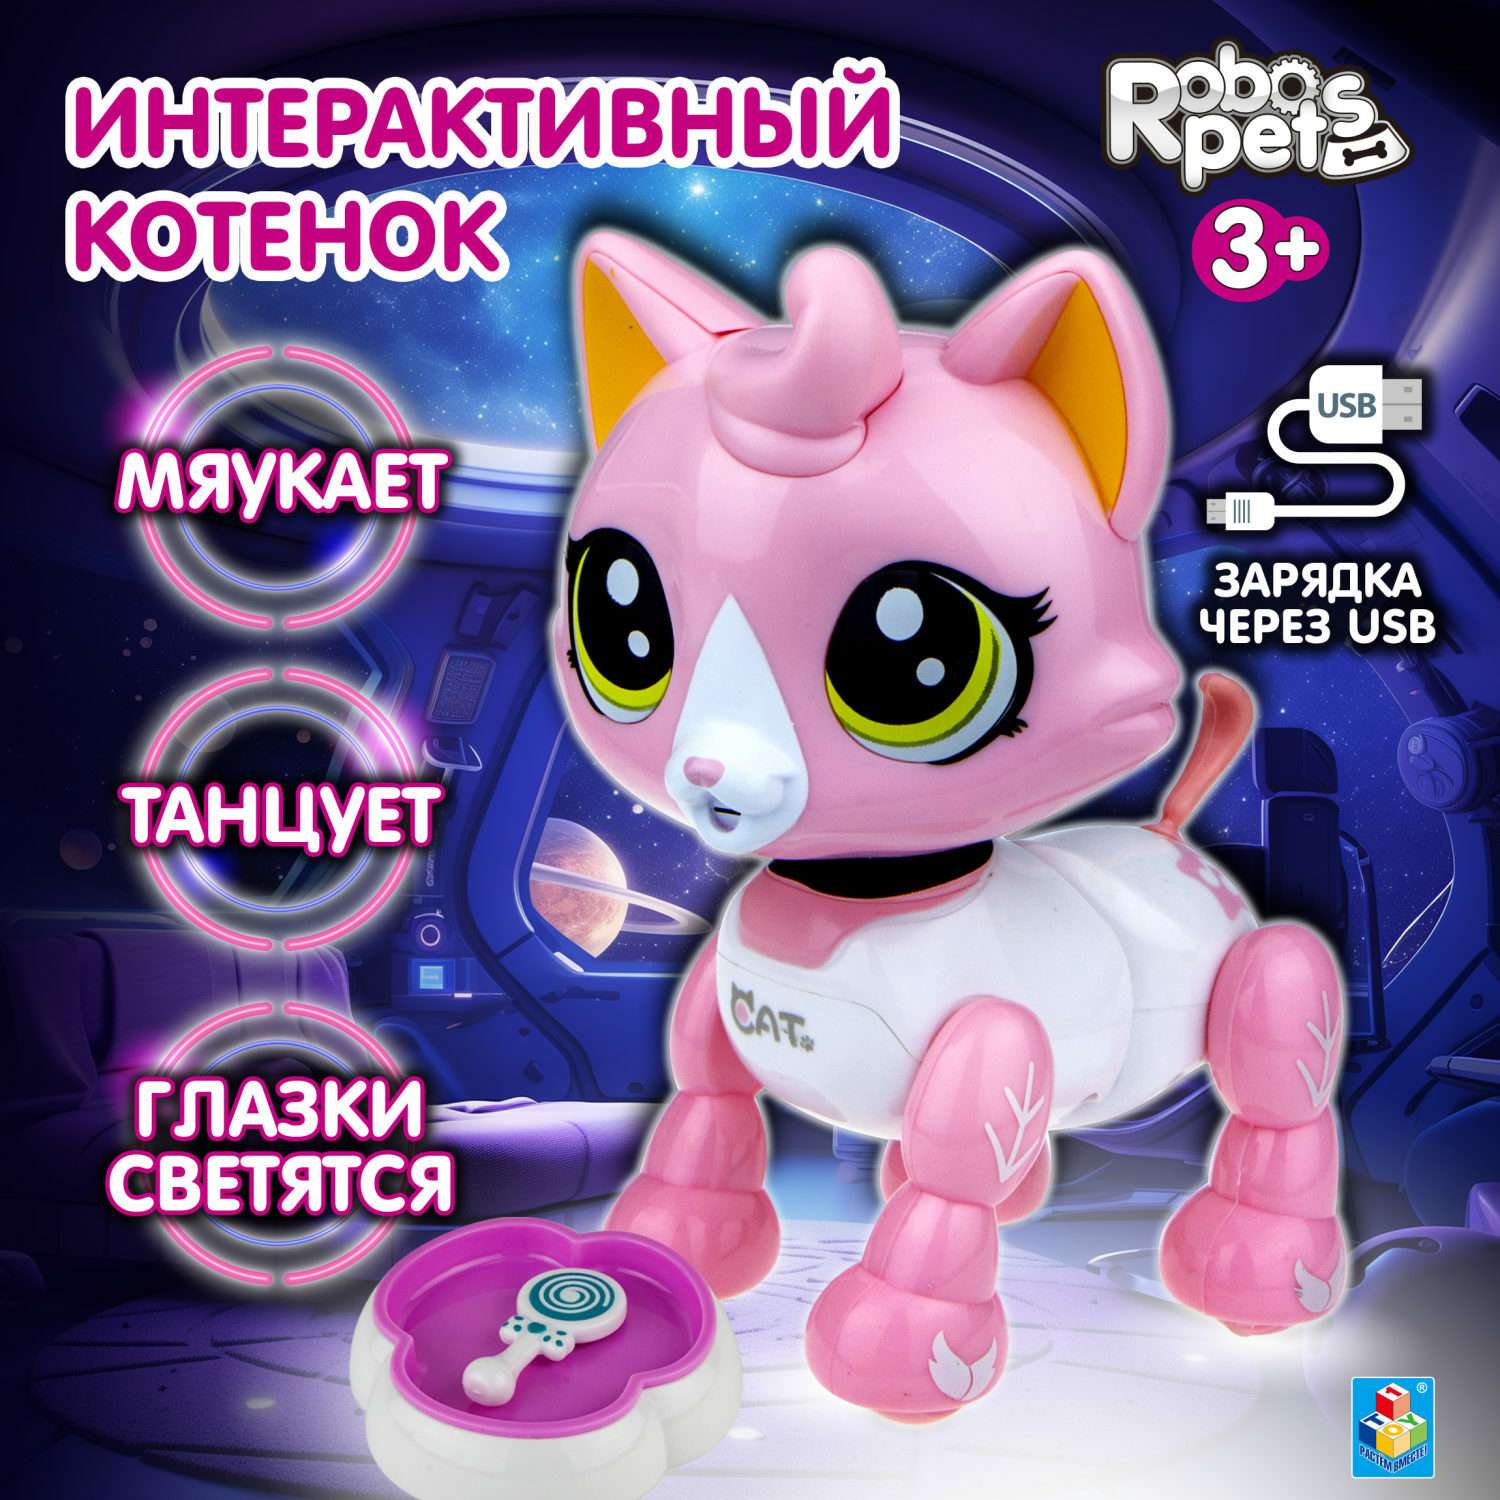 Интерактивная игрушка Robo Pets Робо-котенок бело-розовый - фото 1